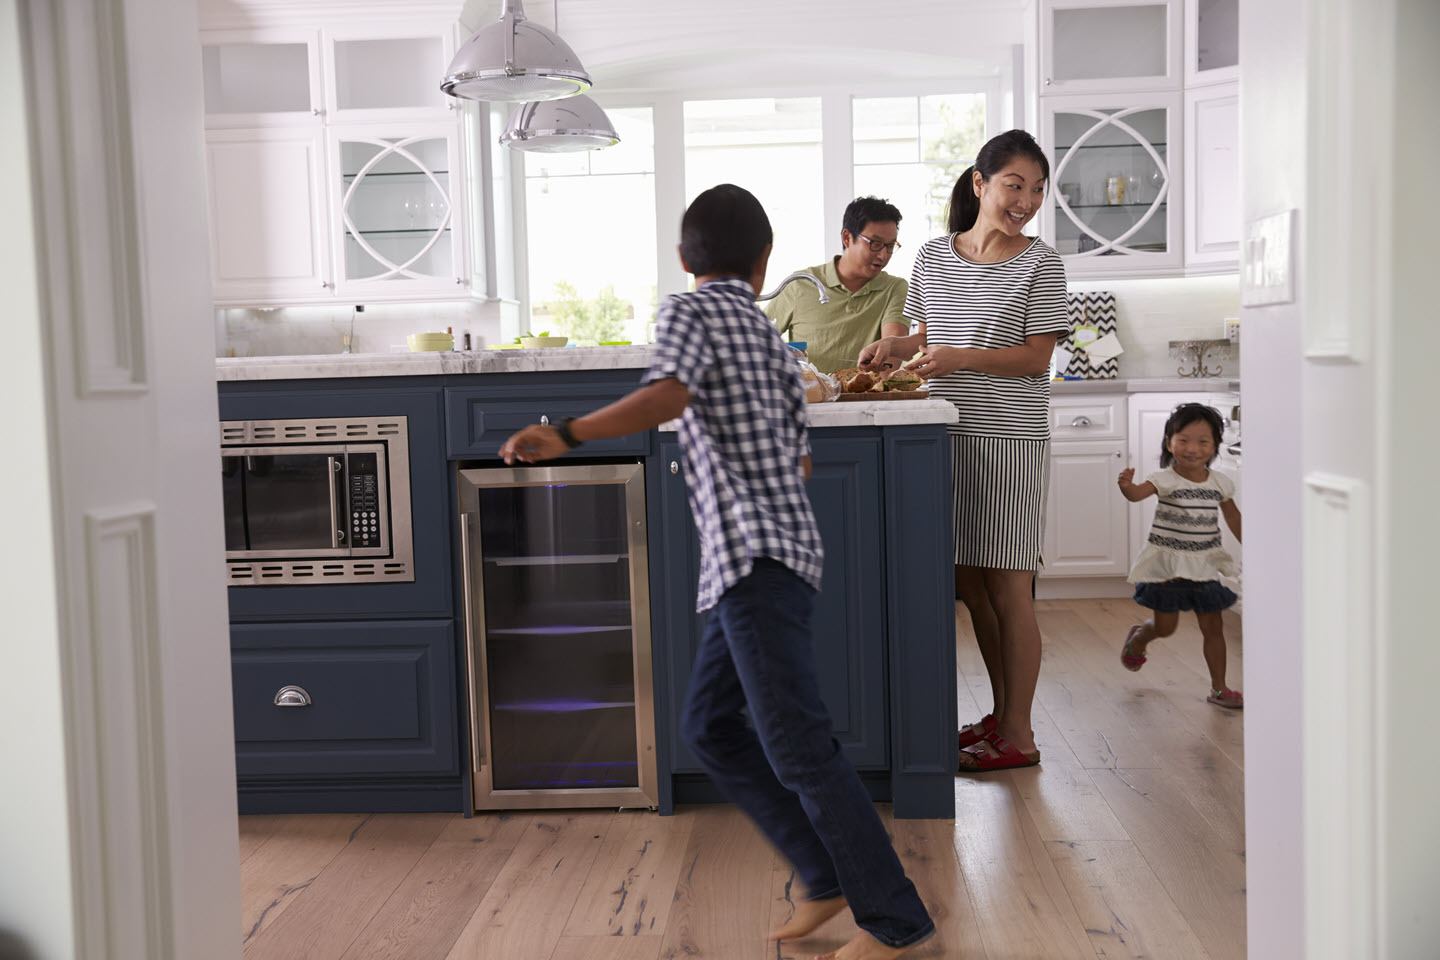 Woman in kitchen with three kids running around her